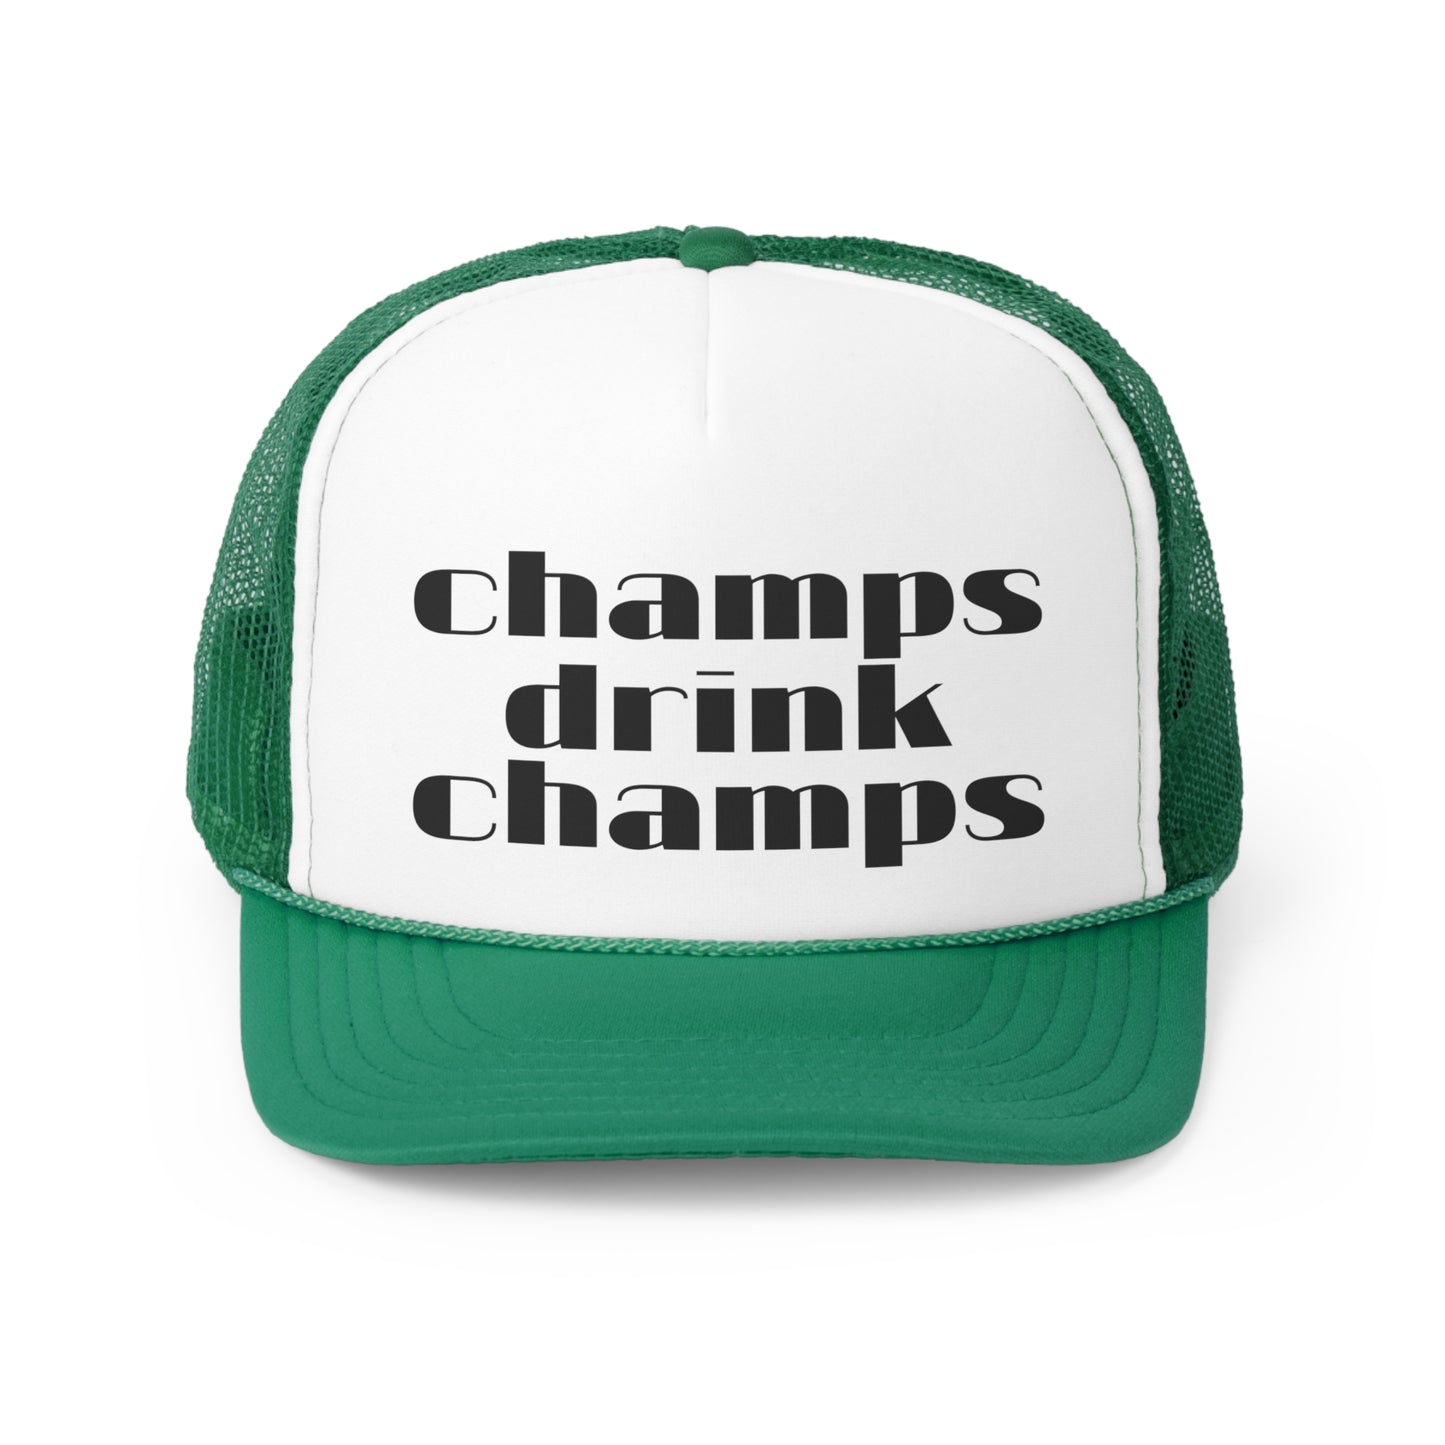 Champagne Trucker Hat, Champagne Hat, Trucker Hat, Champs Drink Champs Hat, Champagne